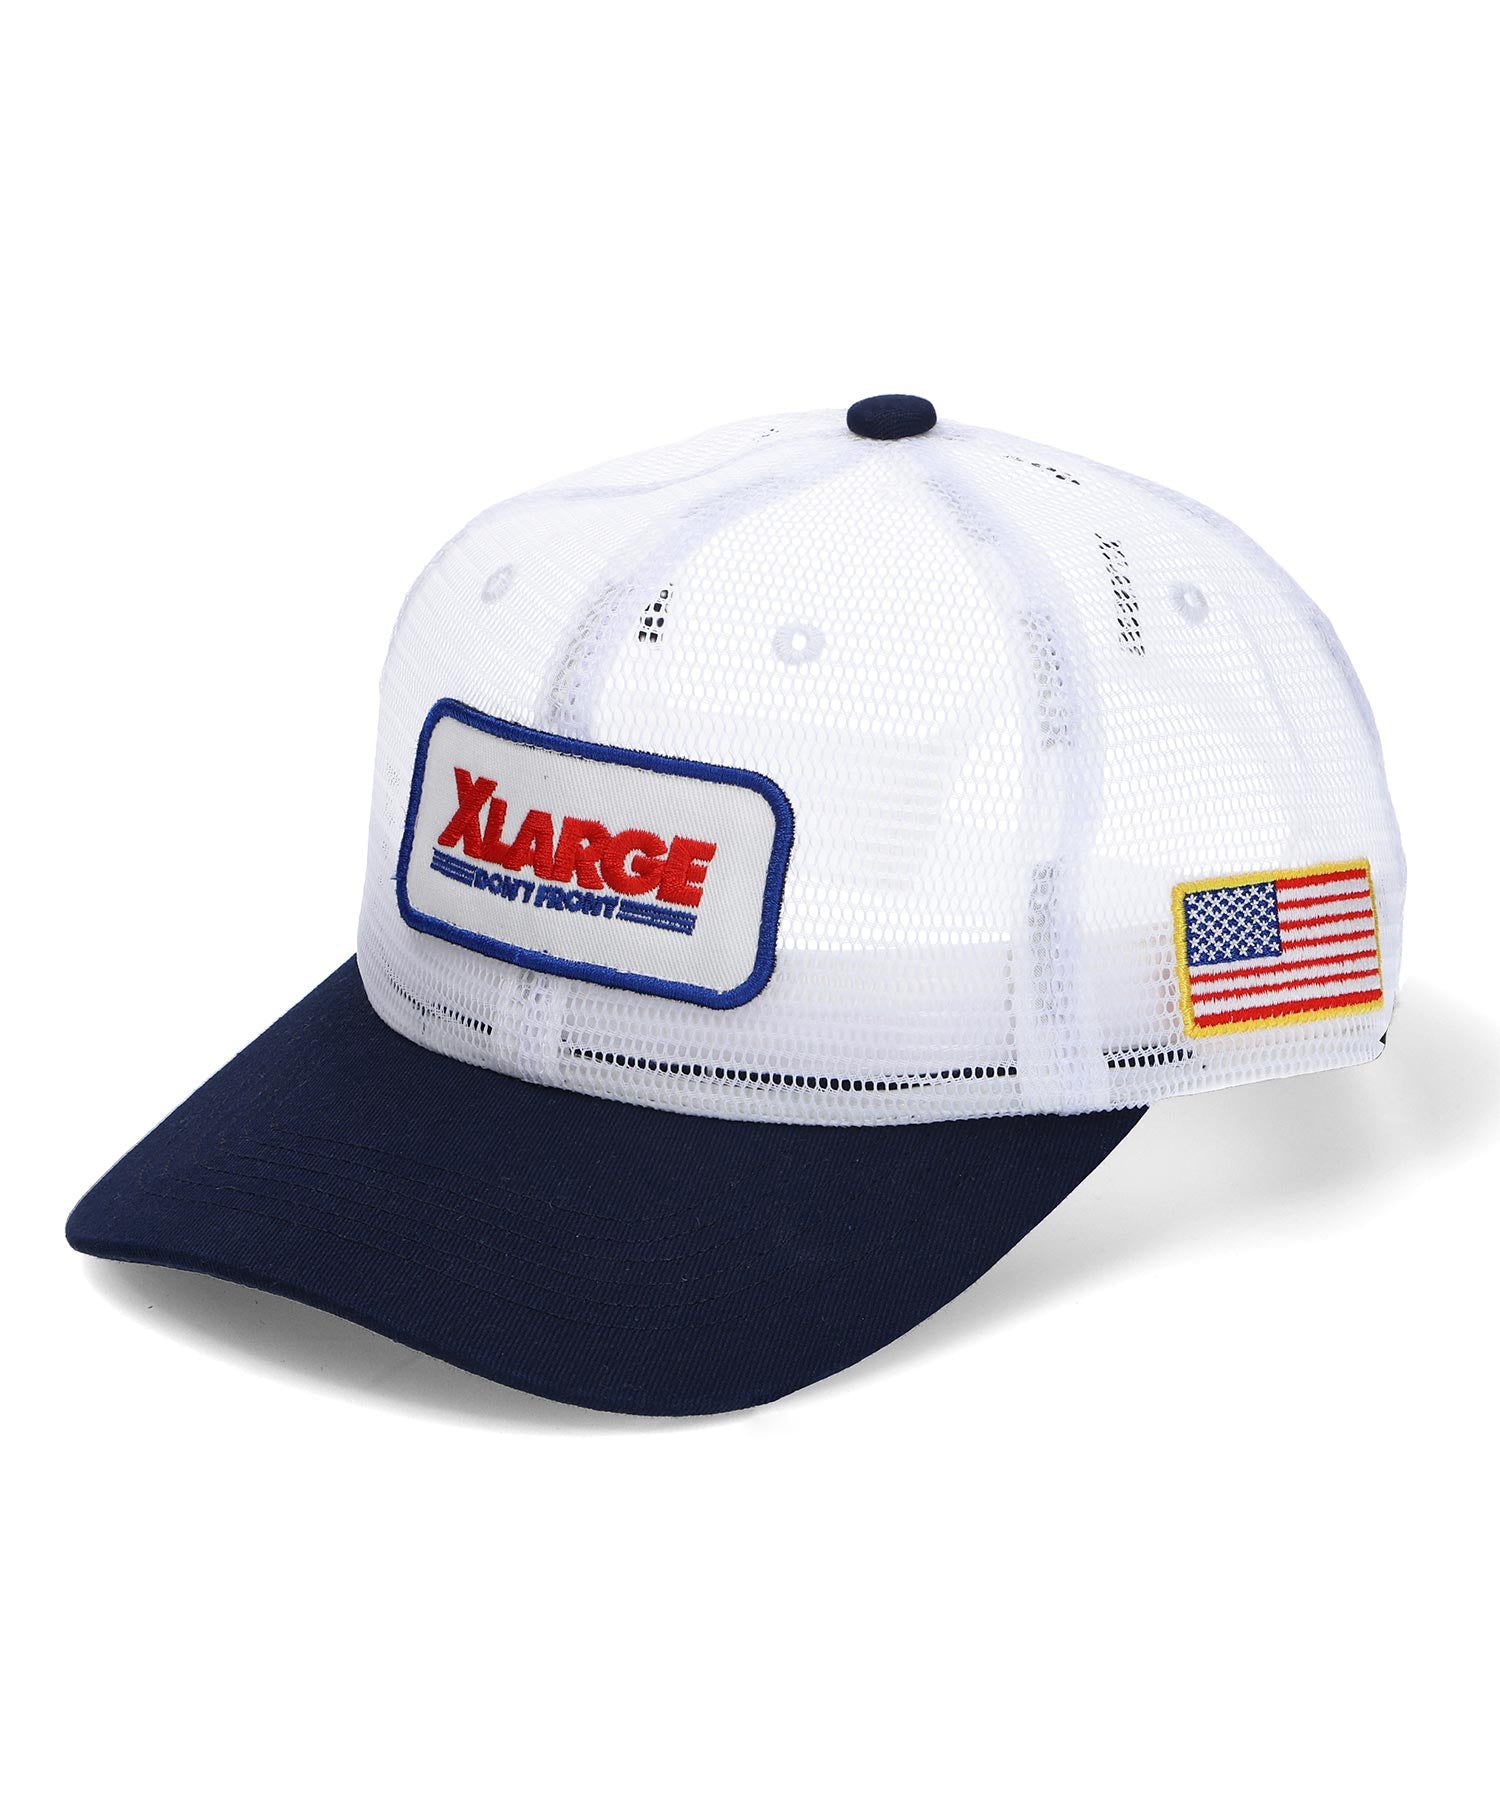 หมวก XLARGE รุ่น Logo Patched Full Mesh Cap